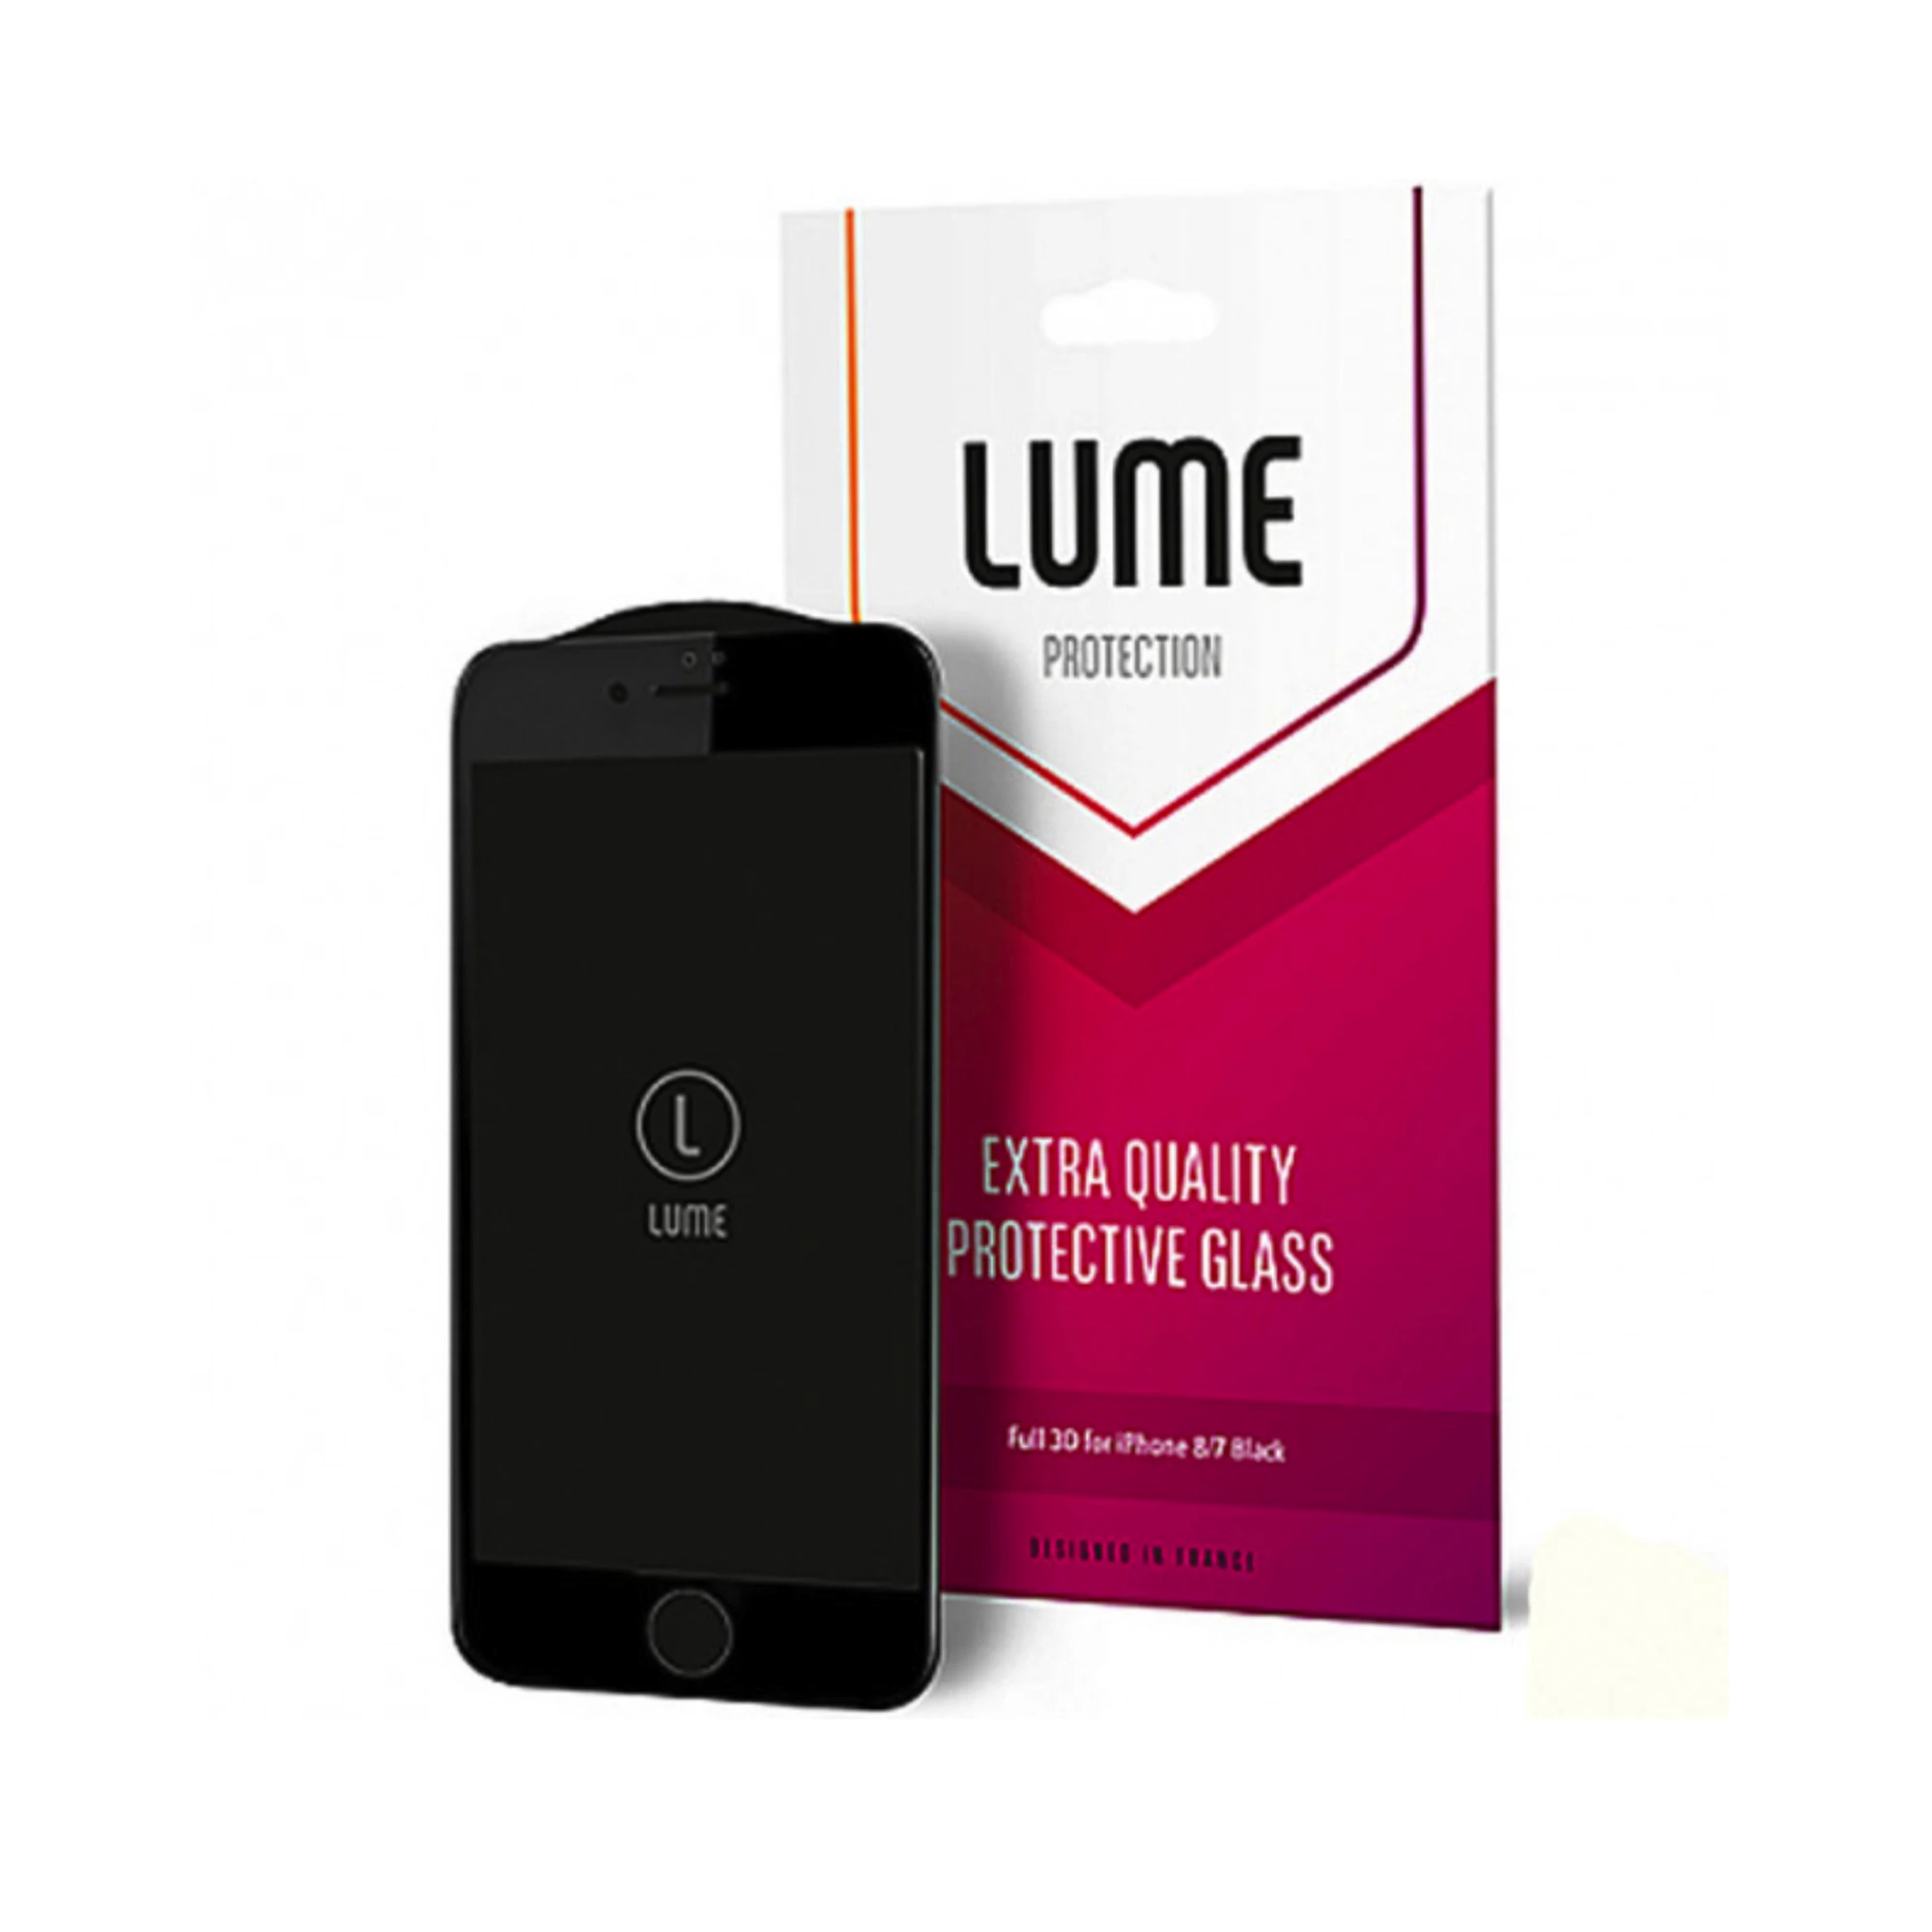 Поклейка захисного 3D скла LUME Protection для iPhone 7/8/SE 2020